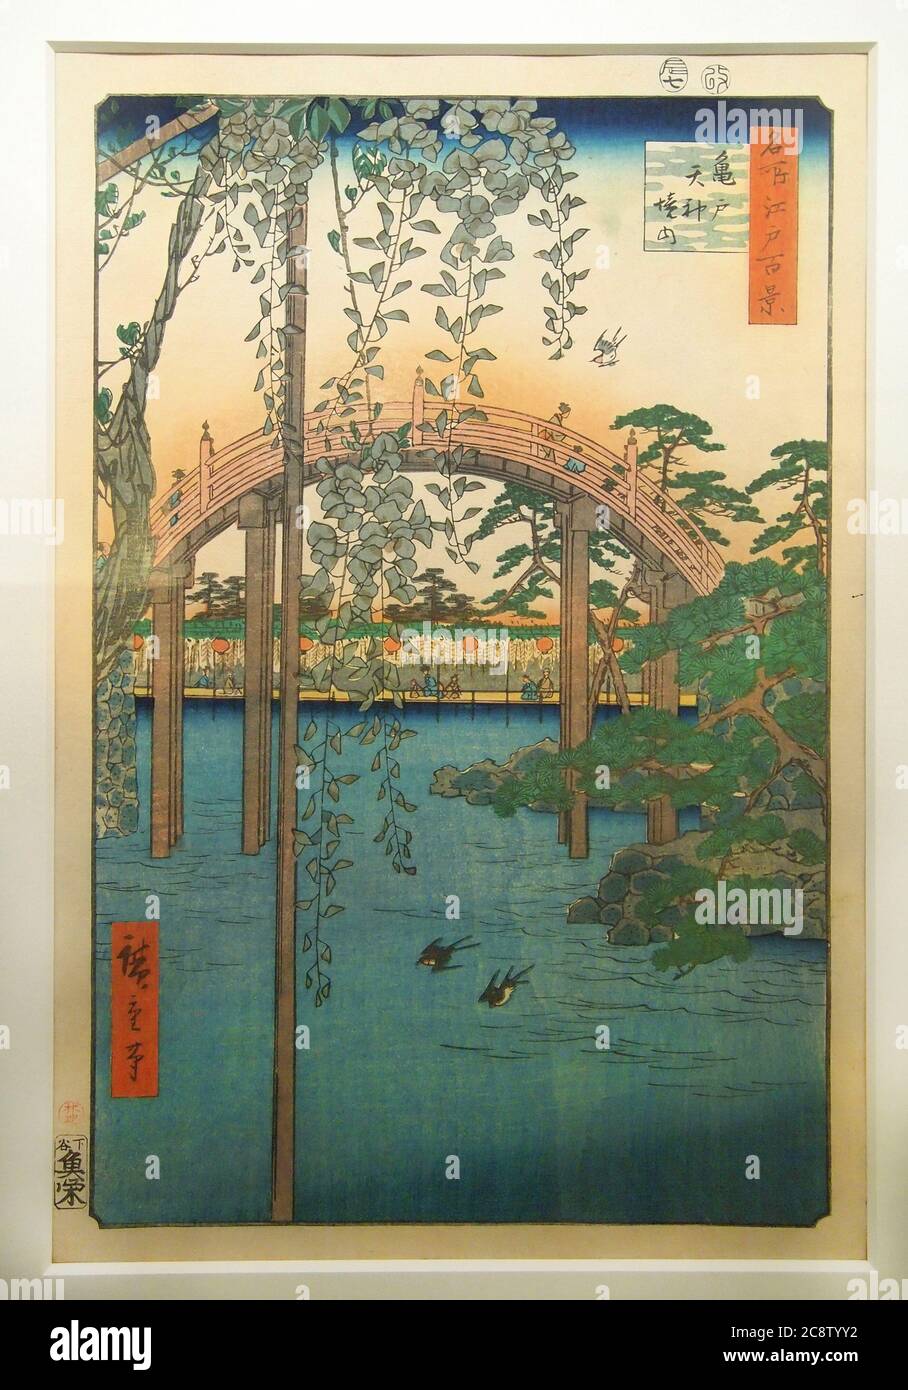 Utagawa Hiroshige. Pont dans le jardin (1858). Pont de batterie et jardin au sanctuaire de Kameido Tenjin (Tokyo). La glycine à fleurs indique la saison estivale. Banque D'Images